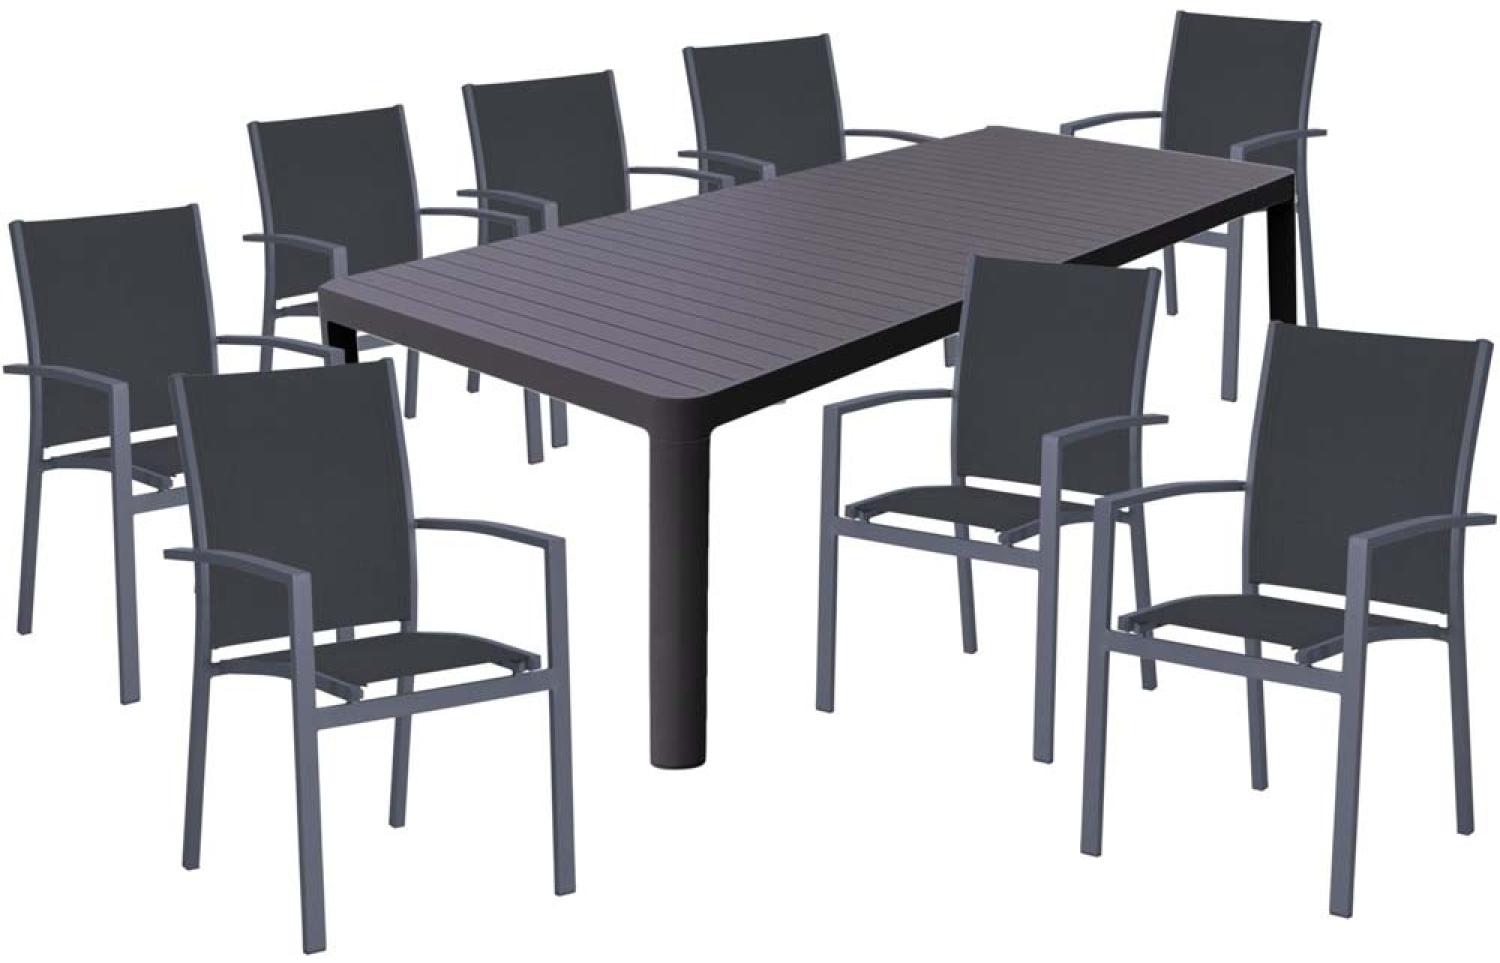 Tischgruppe AMIRA, 9 teilig, Aluminium, dunkelgrau Bild 1